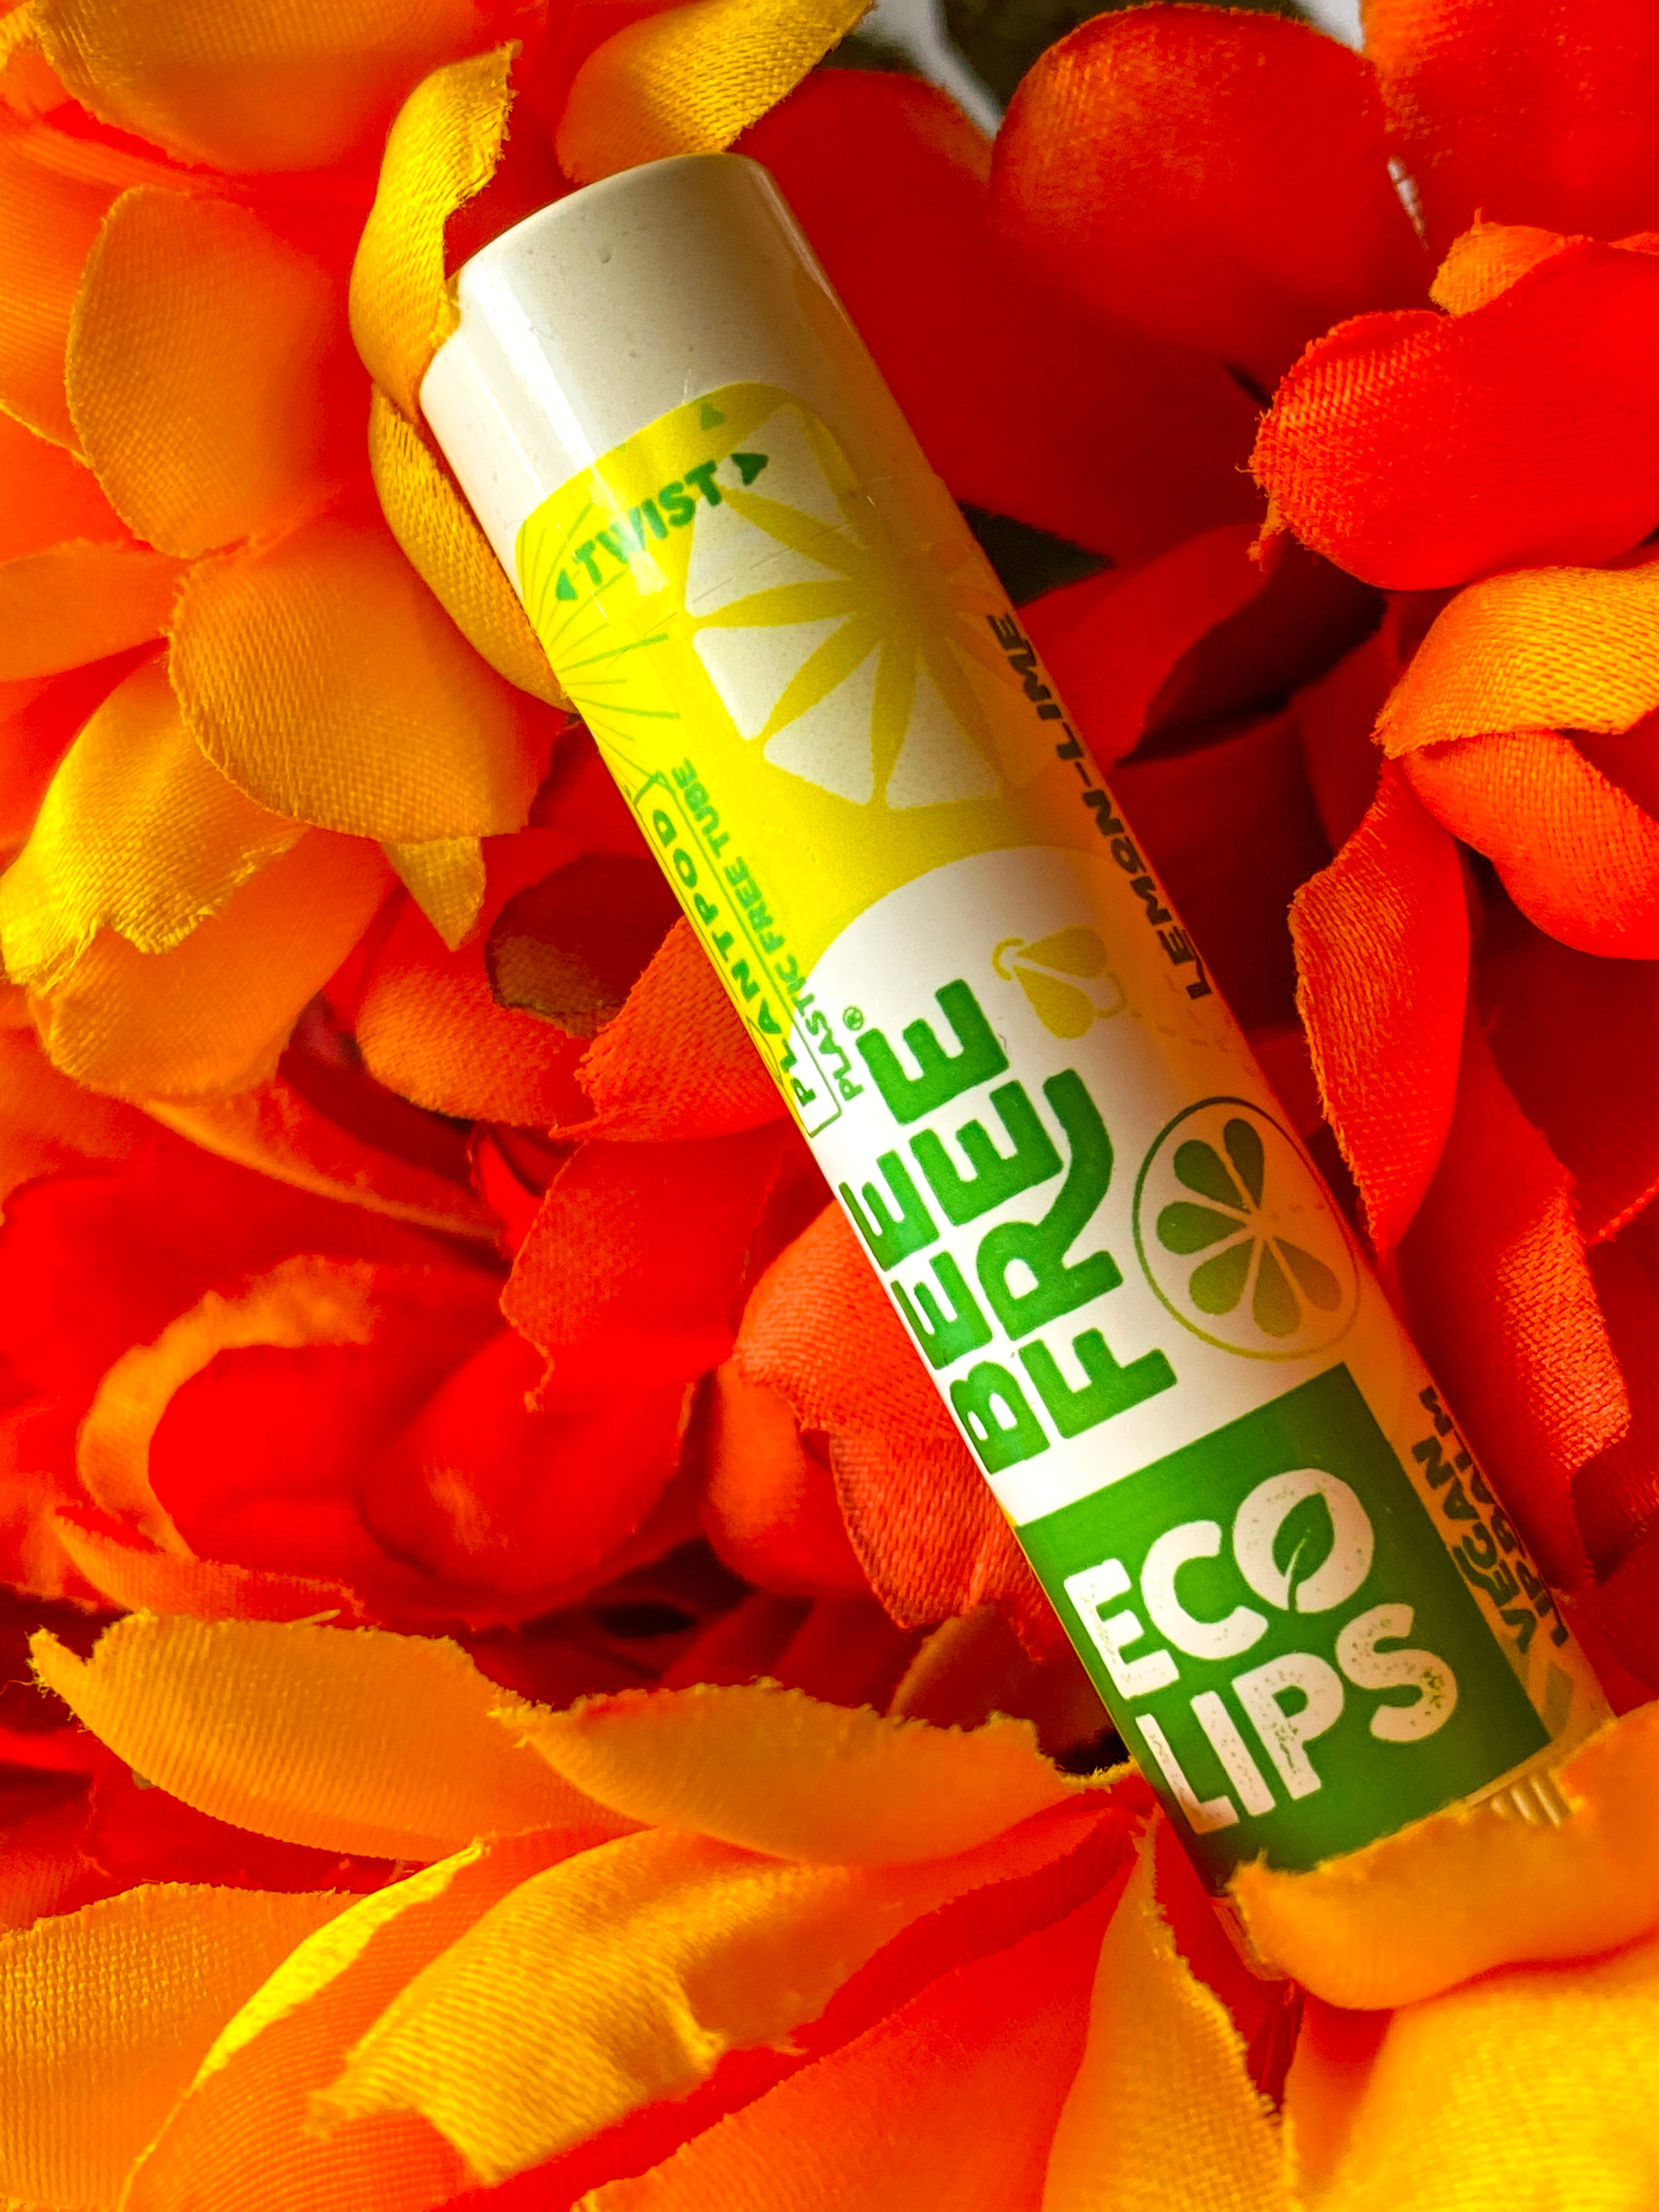 Eco Lips Bee Free Lemon-Lime Lip Balm 0.15 oz